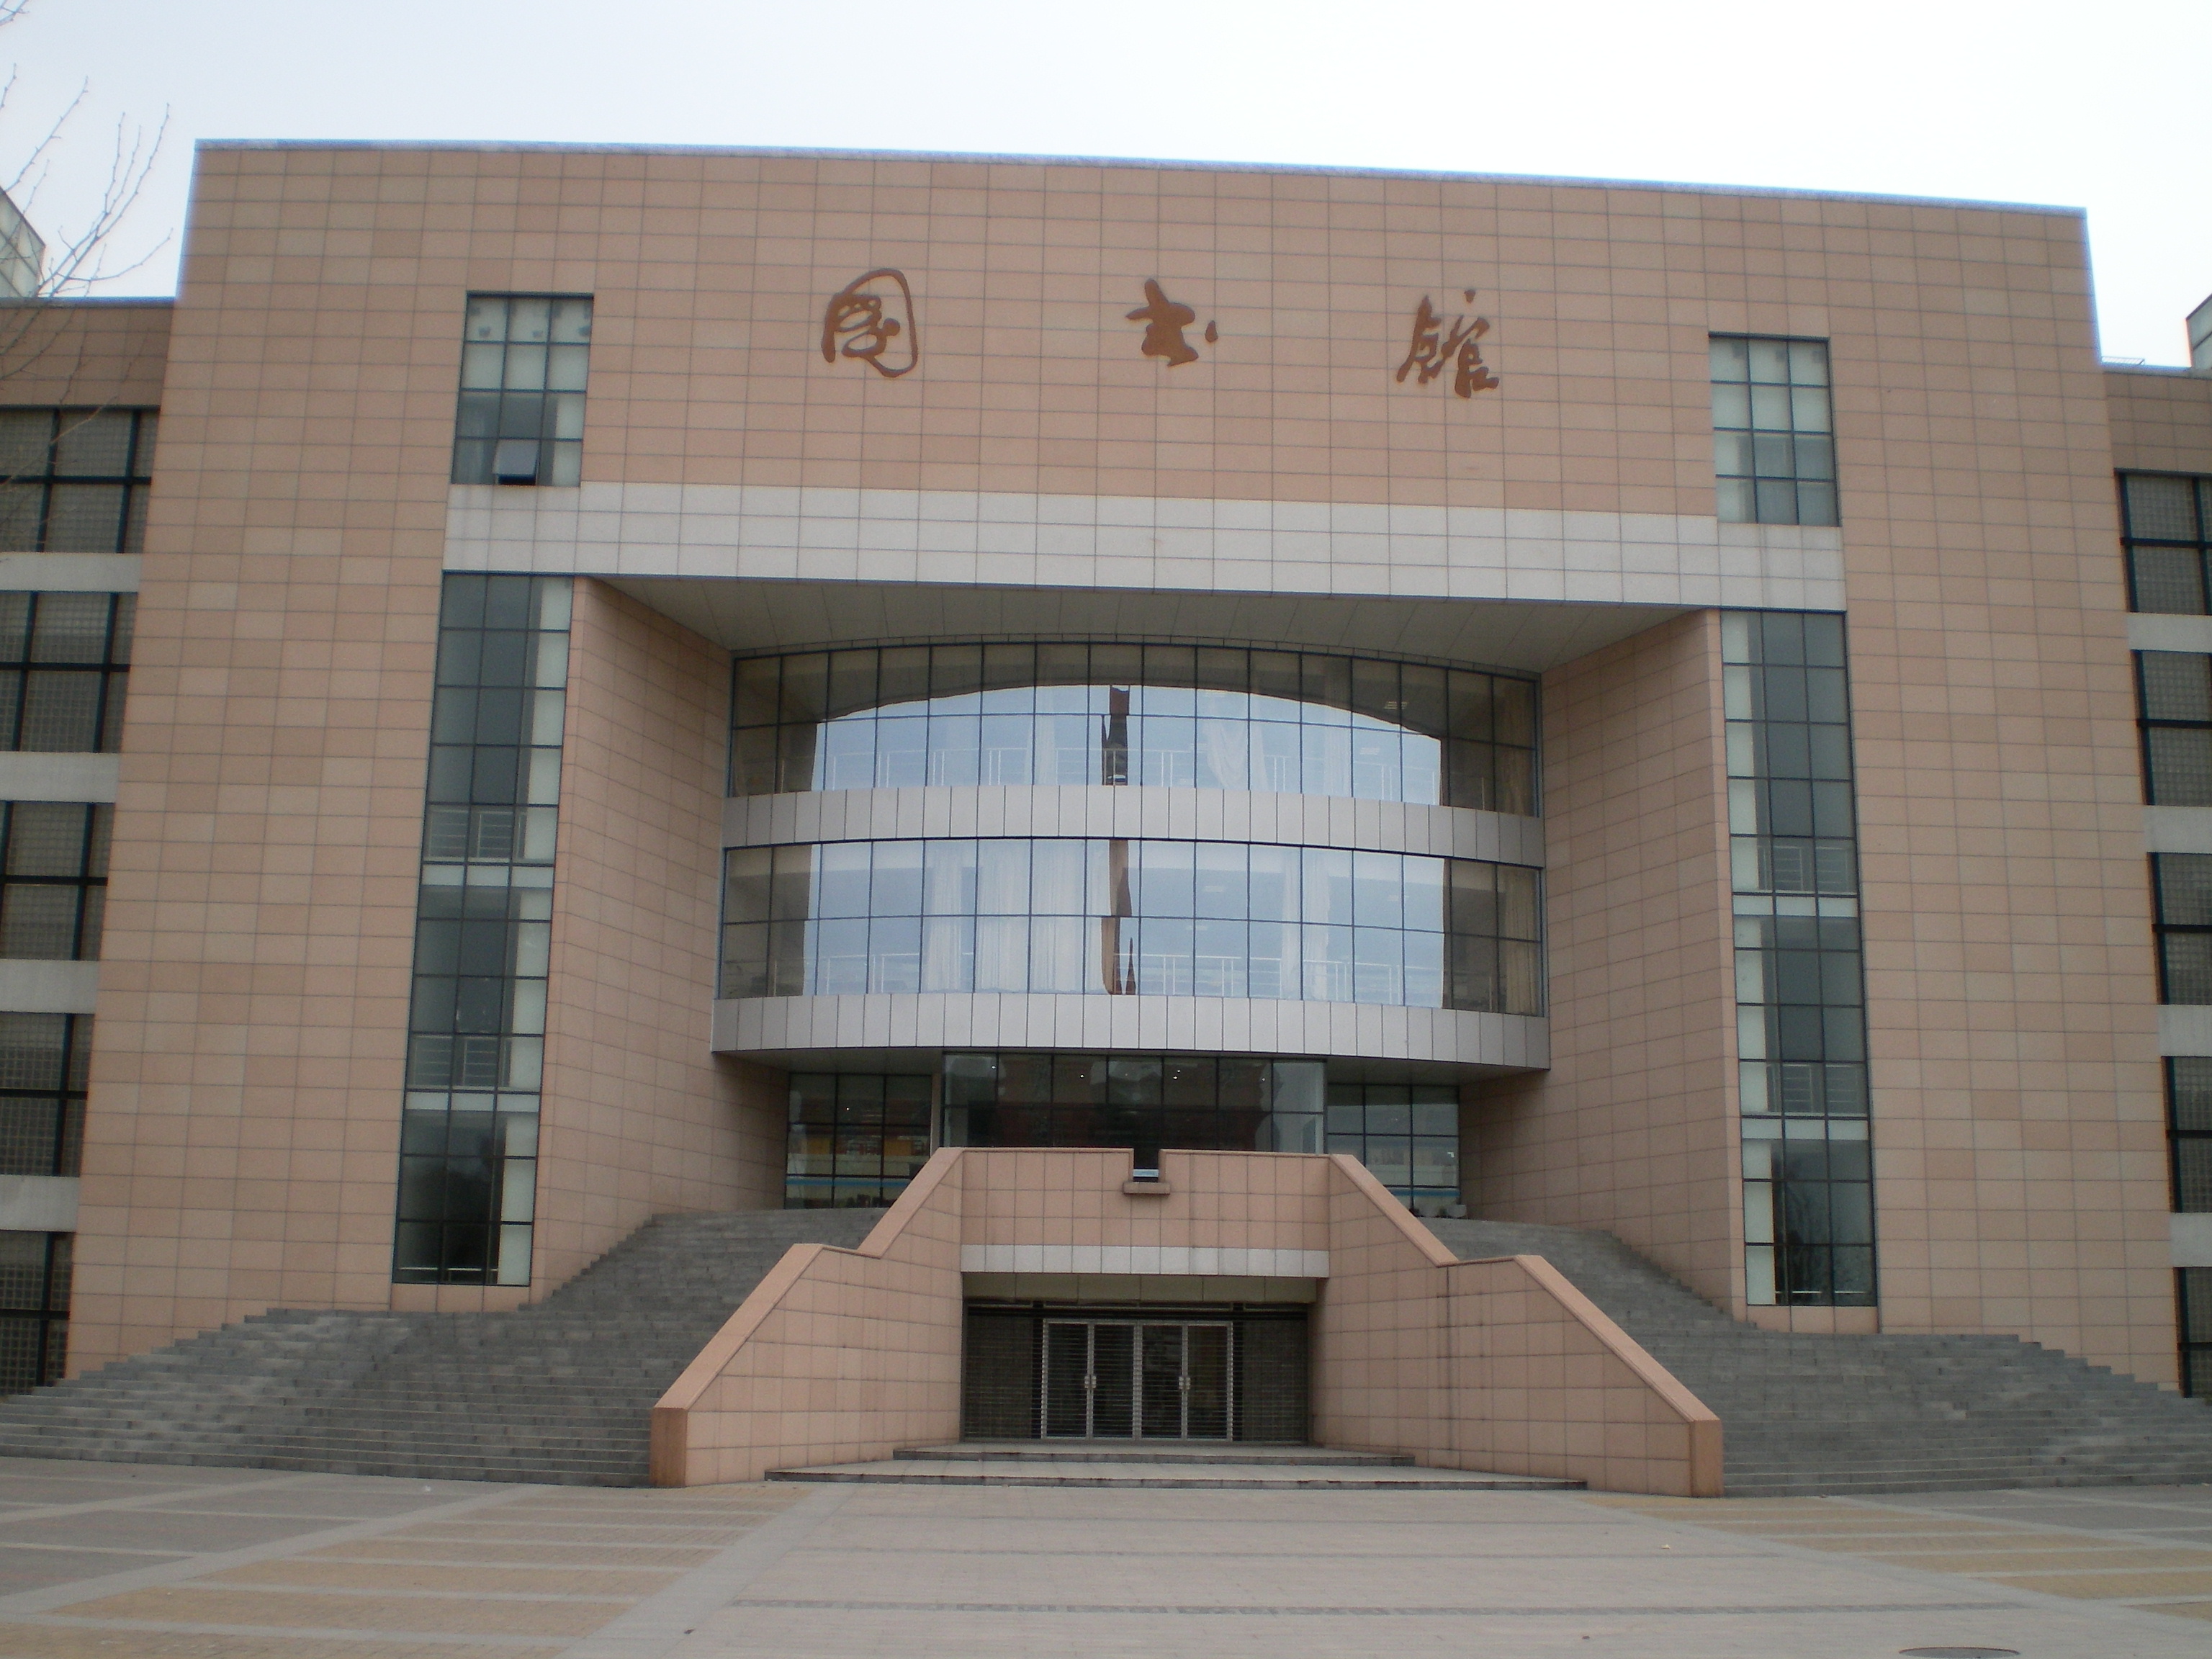 郑州大学美景图片